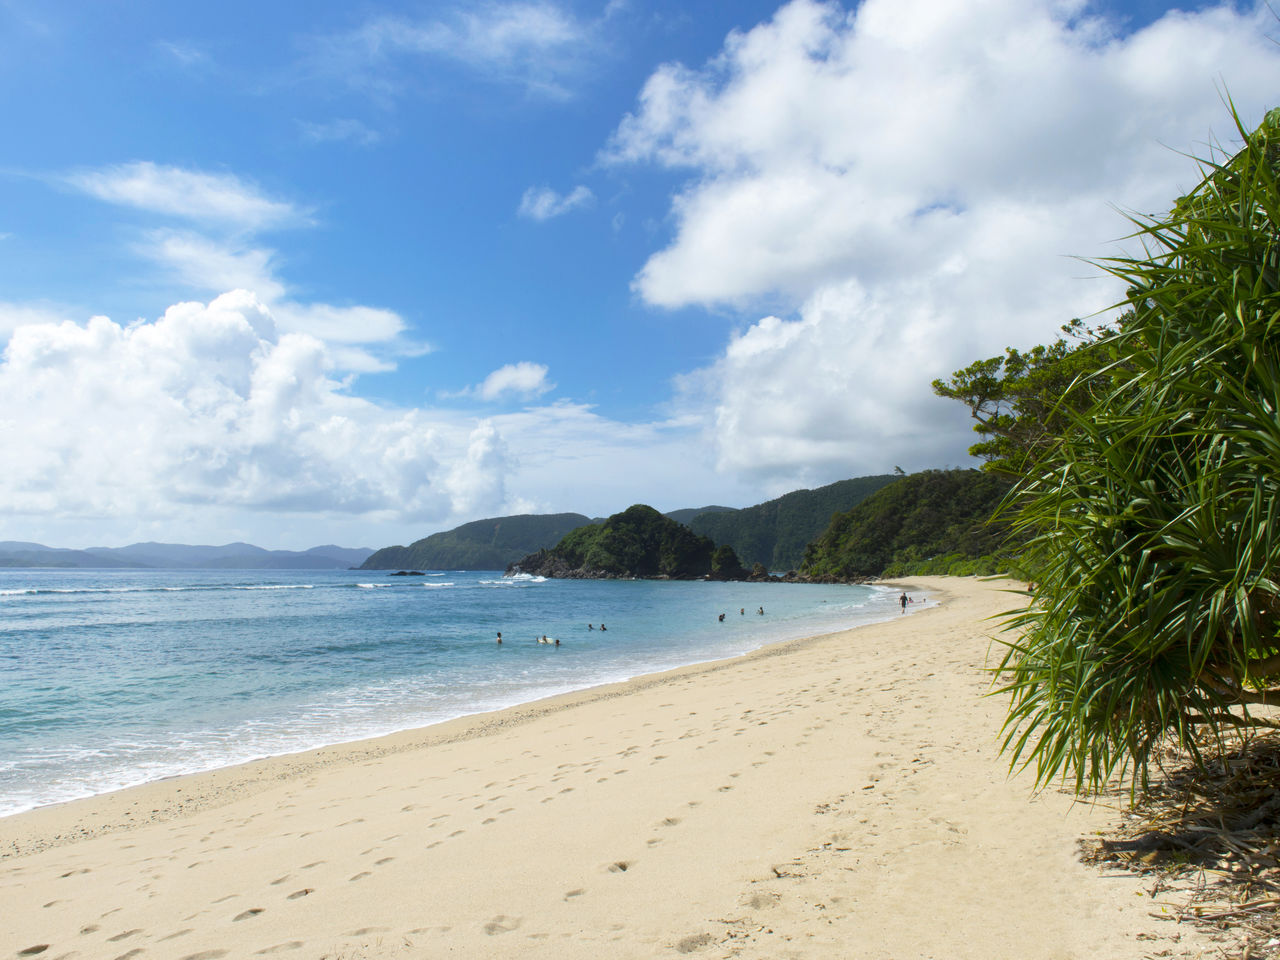 على شاطئ يادوريهاما يمكن مشاهدة تباين رائع بين الرمال البيضاء والمياه الزرقاء.